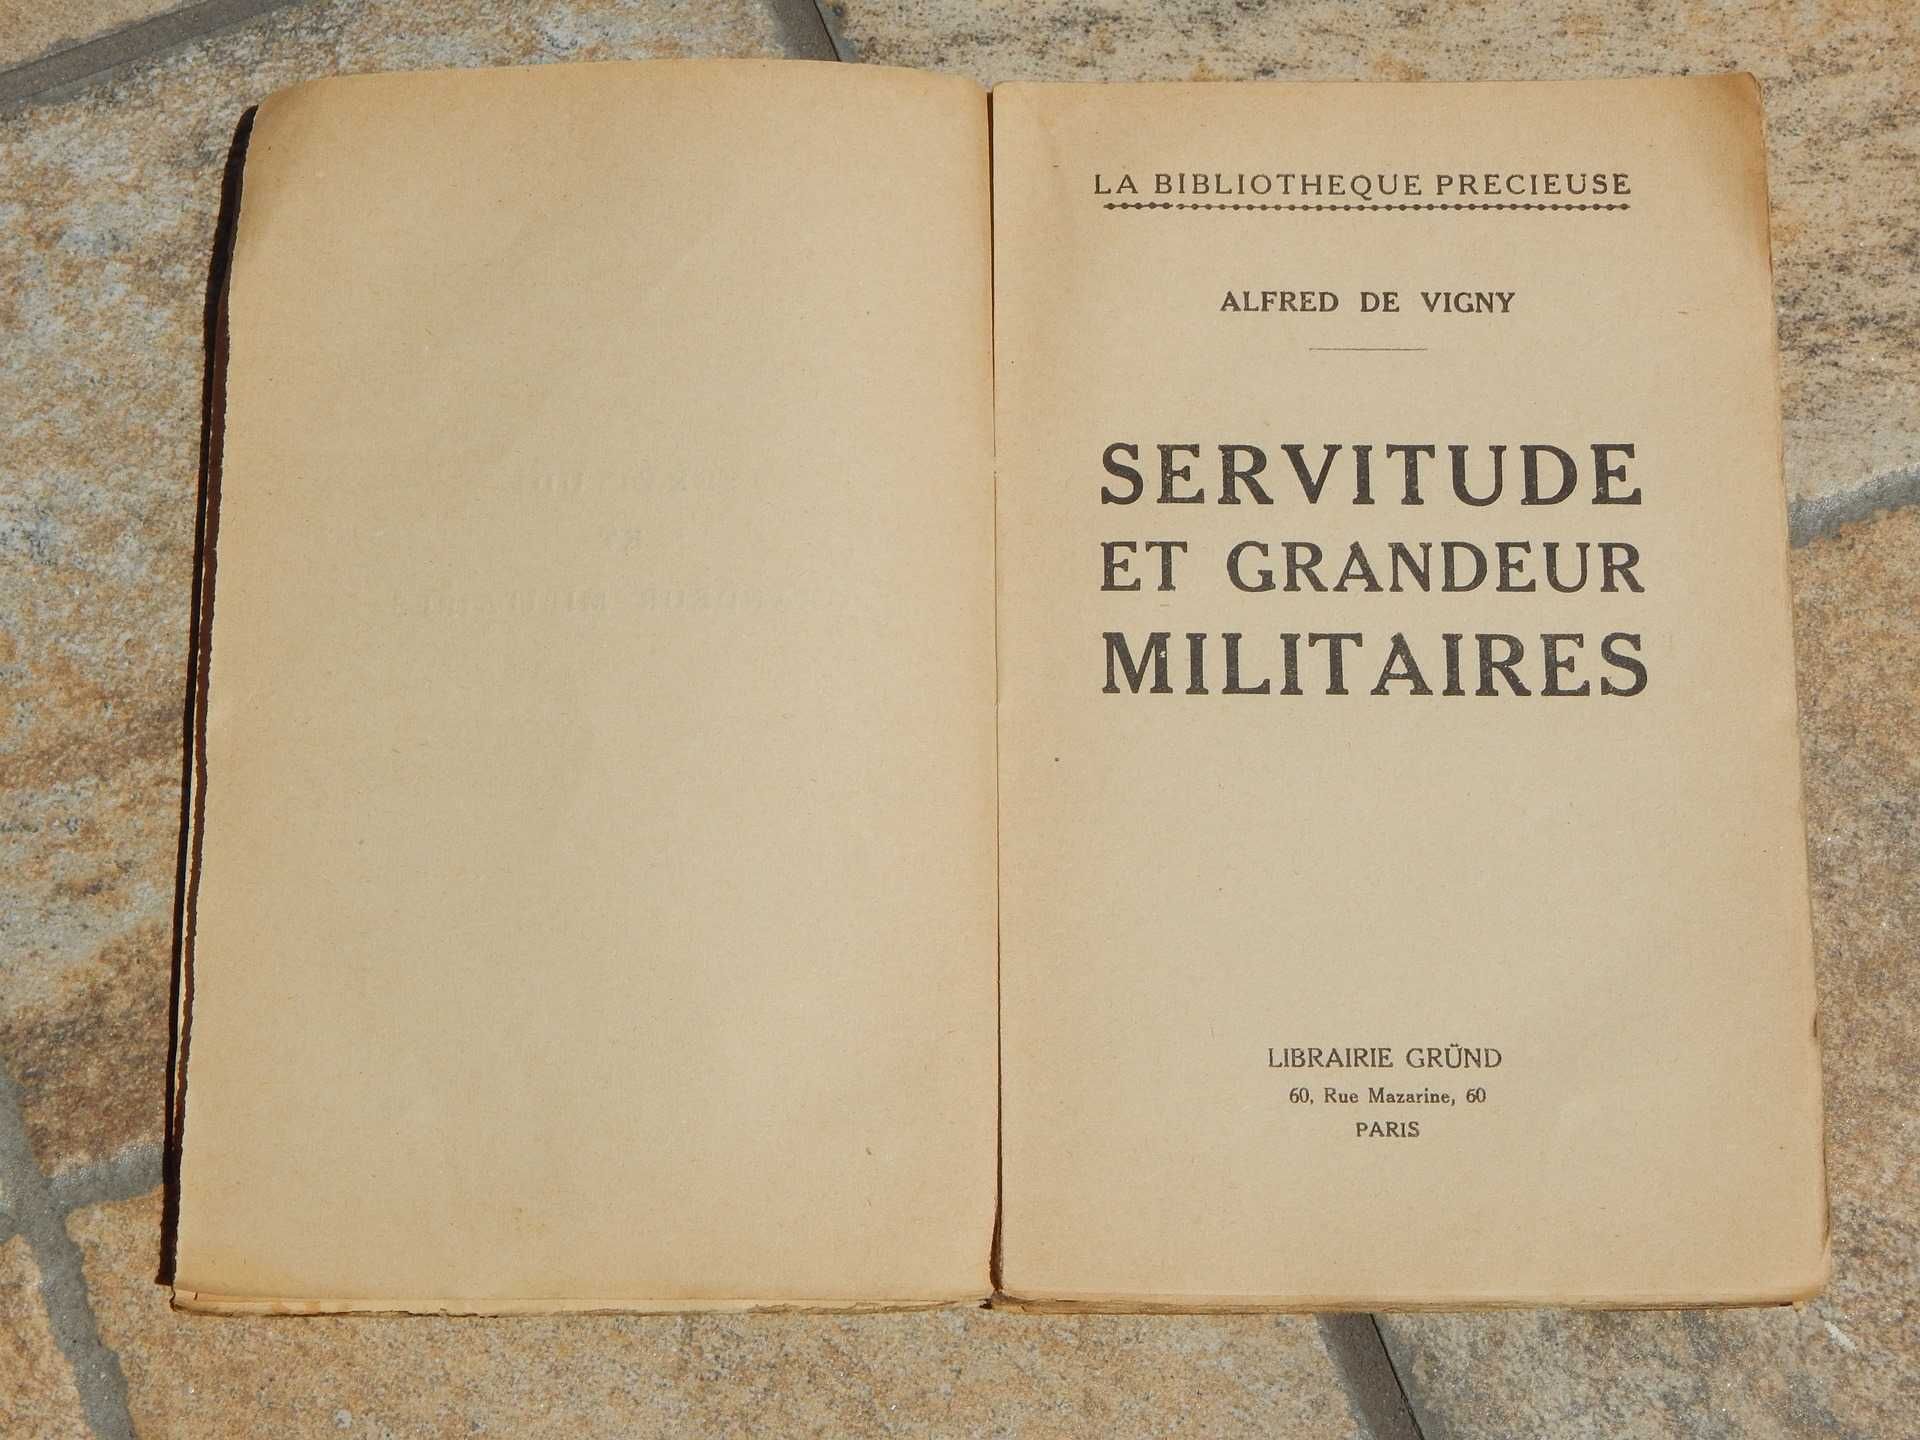 Servitude et grandeurs militaires Alfred de Vigny publicata Paris '30